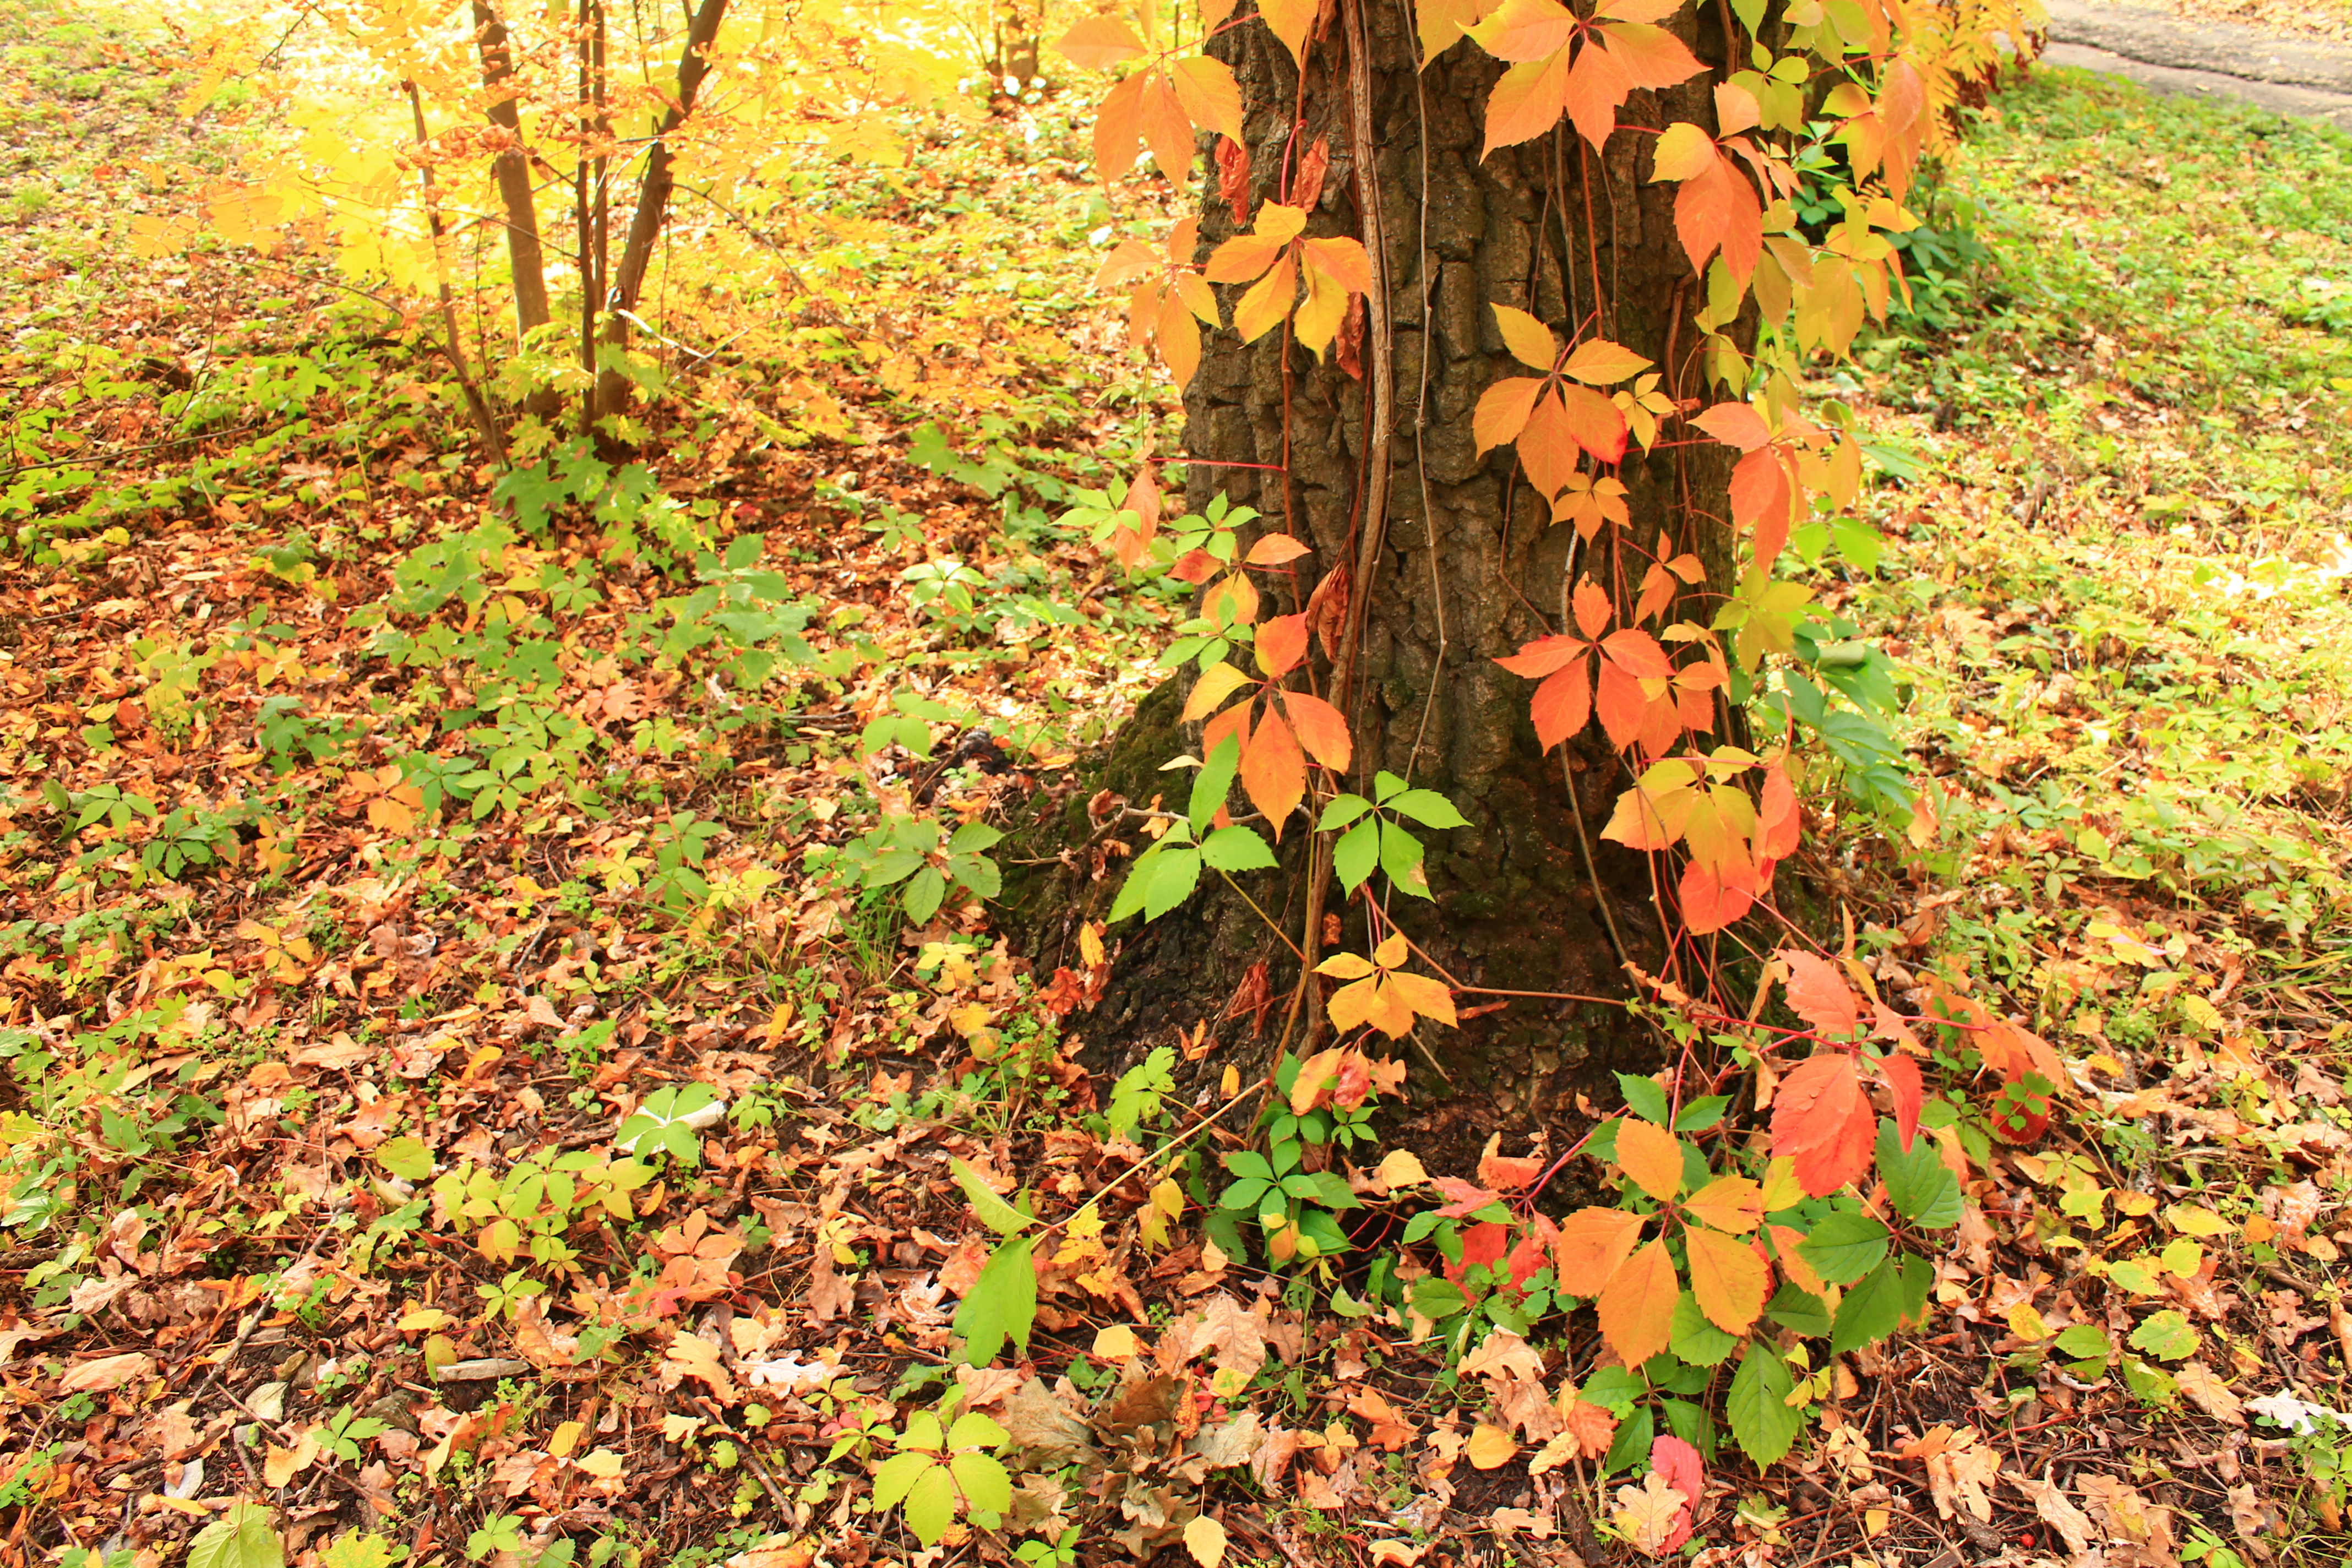 Colorful autumn leaves photo